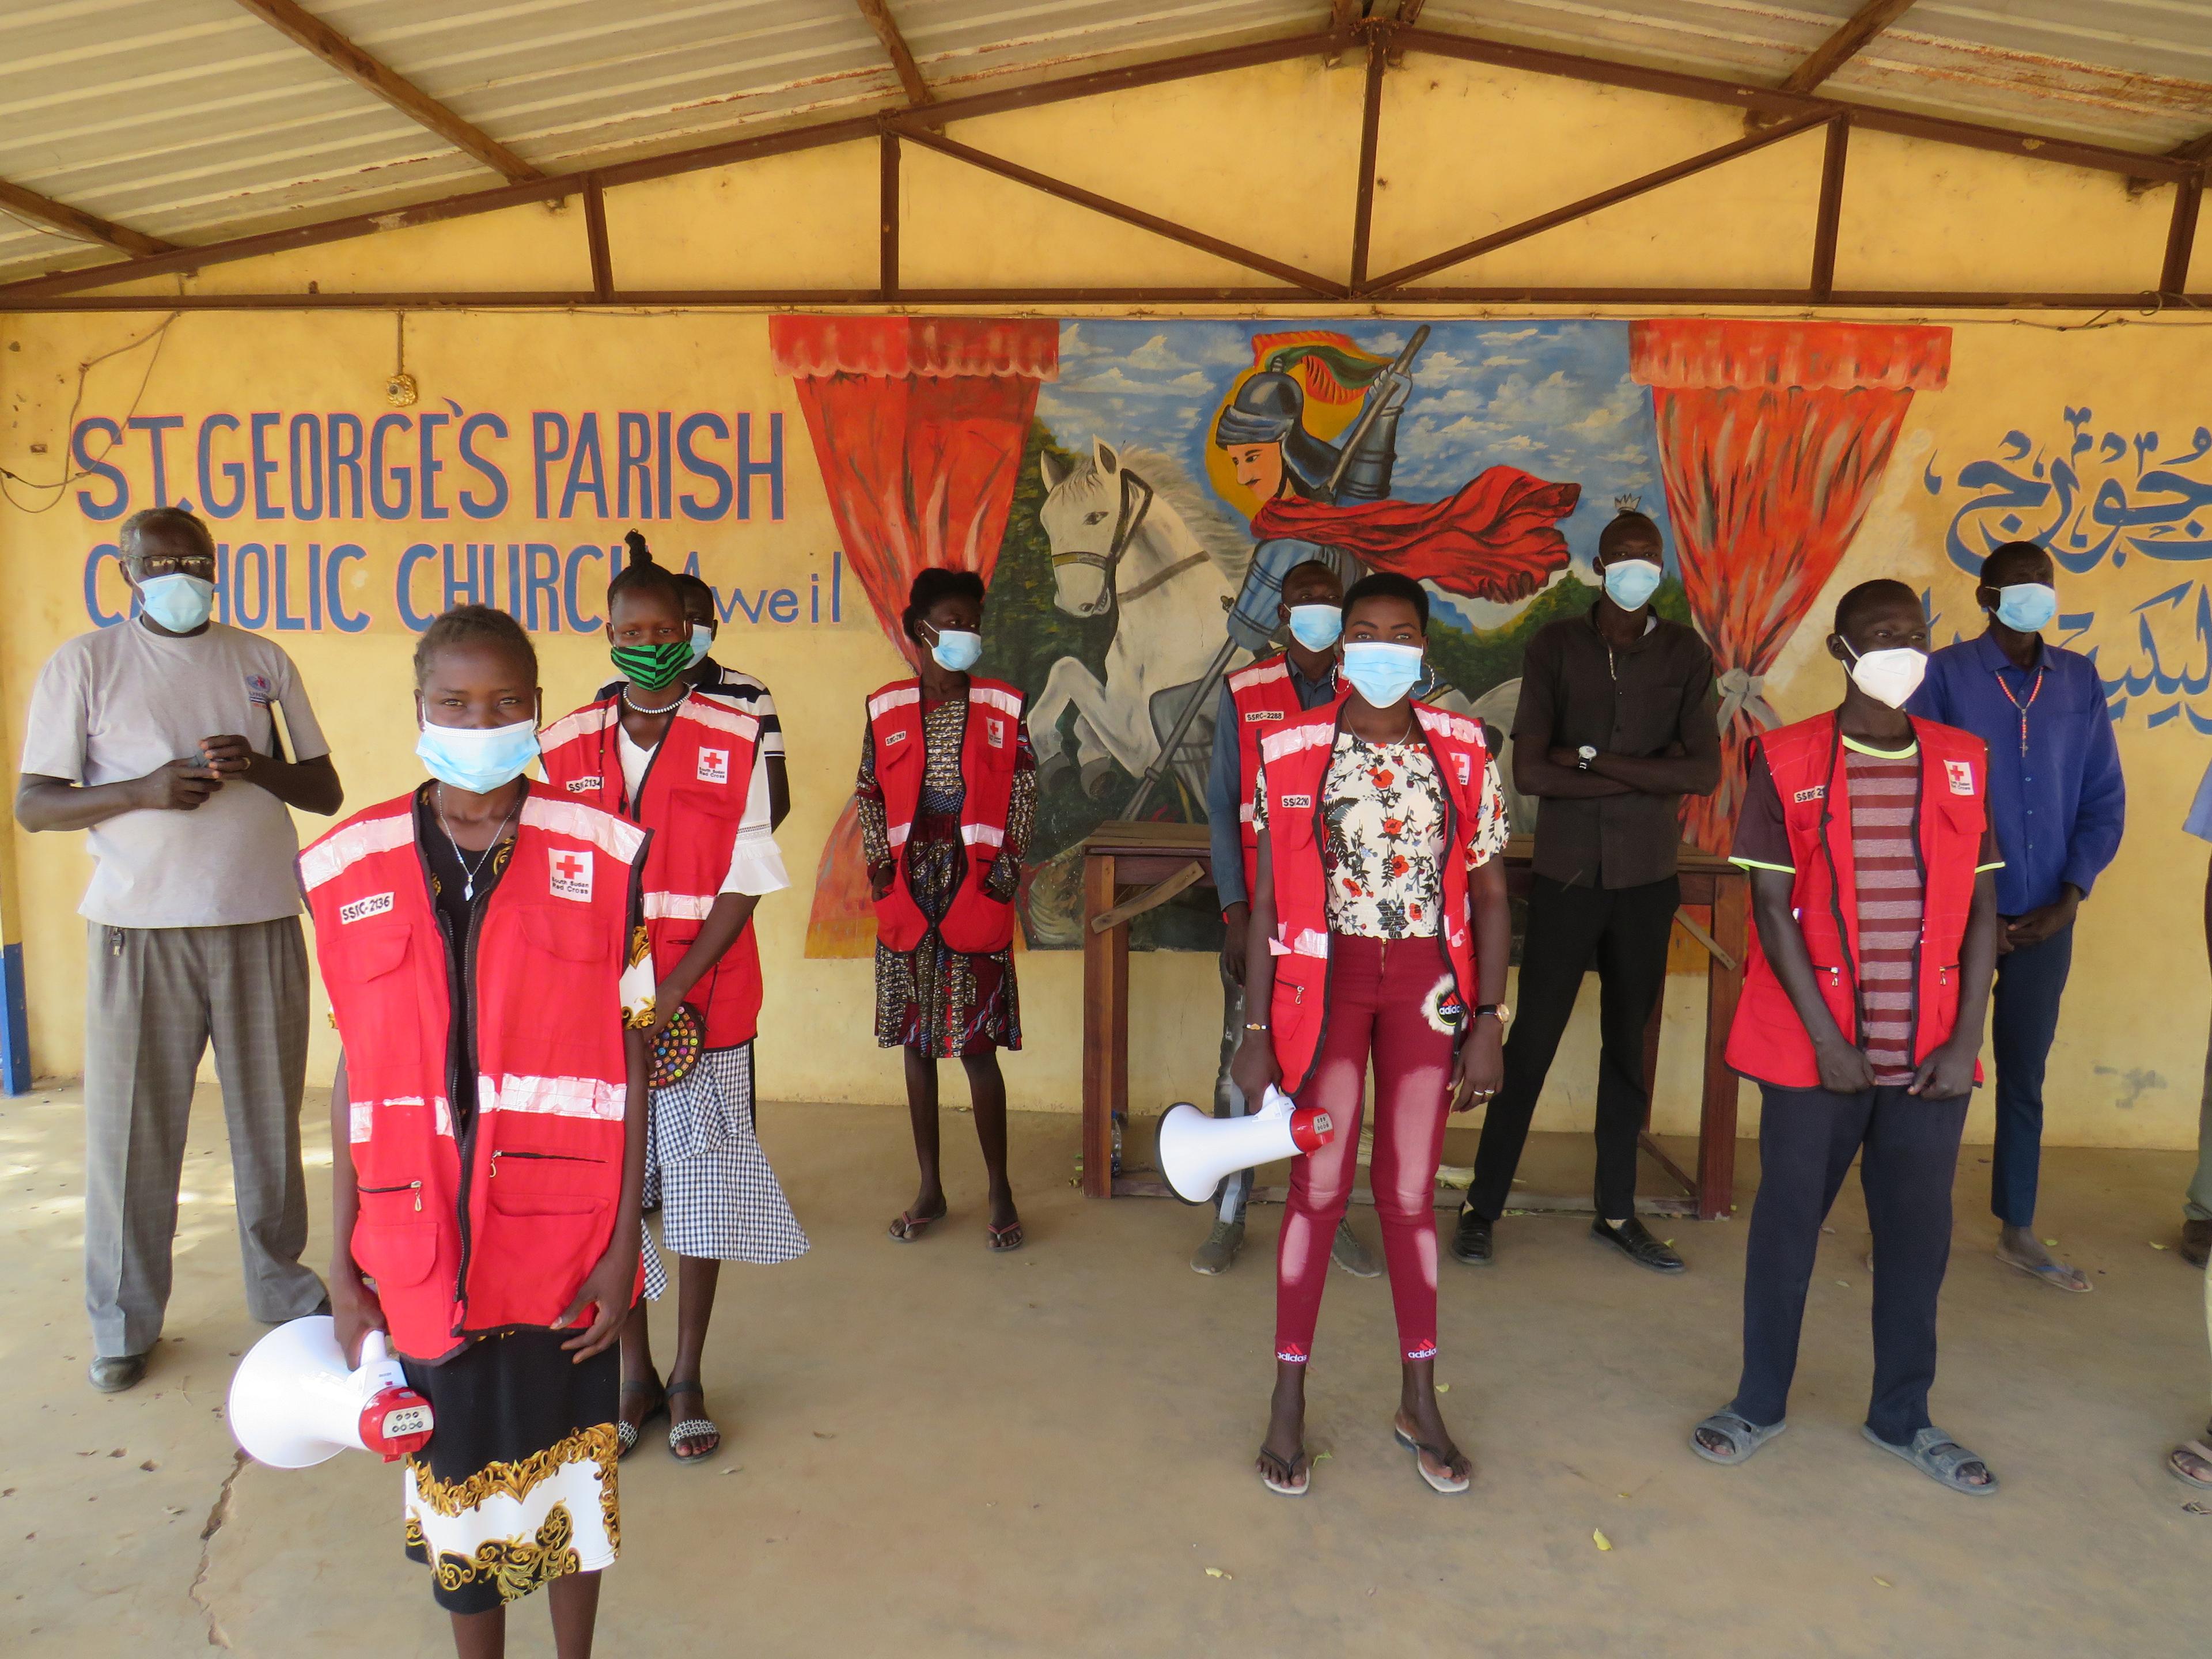 La foto mostra dei volontari della Croce Rossa in un edificio. Mantengono la distanza tra loro e guardano verso l’obiettivo. Sei di loro indossano un gilet rosso con il simbolo della Croce Rossa